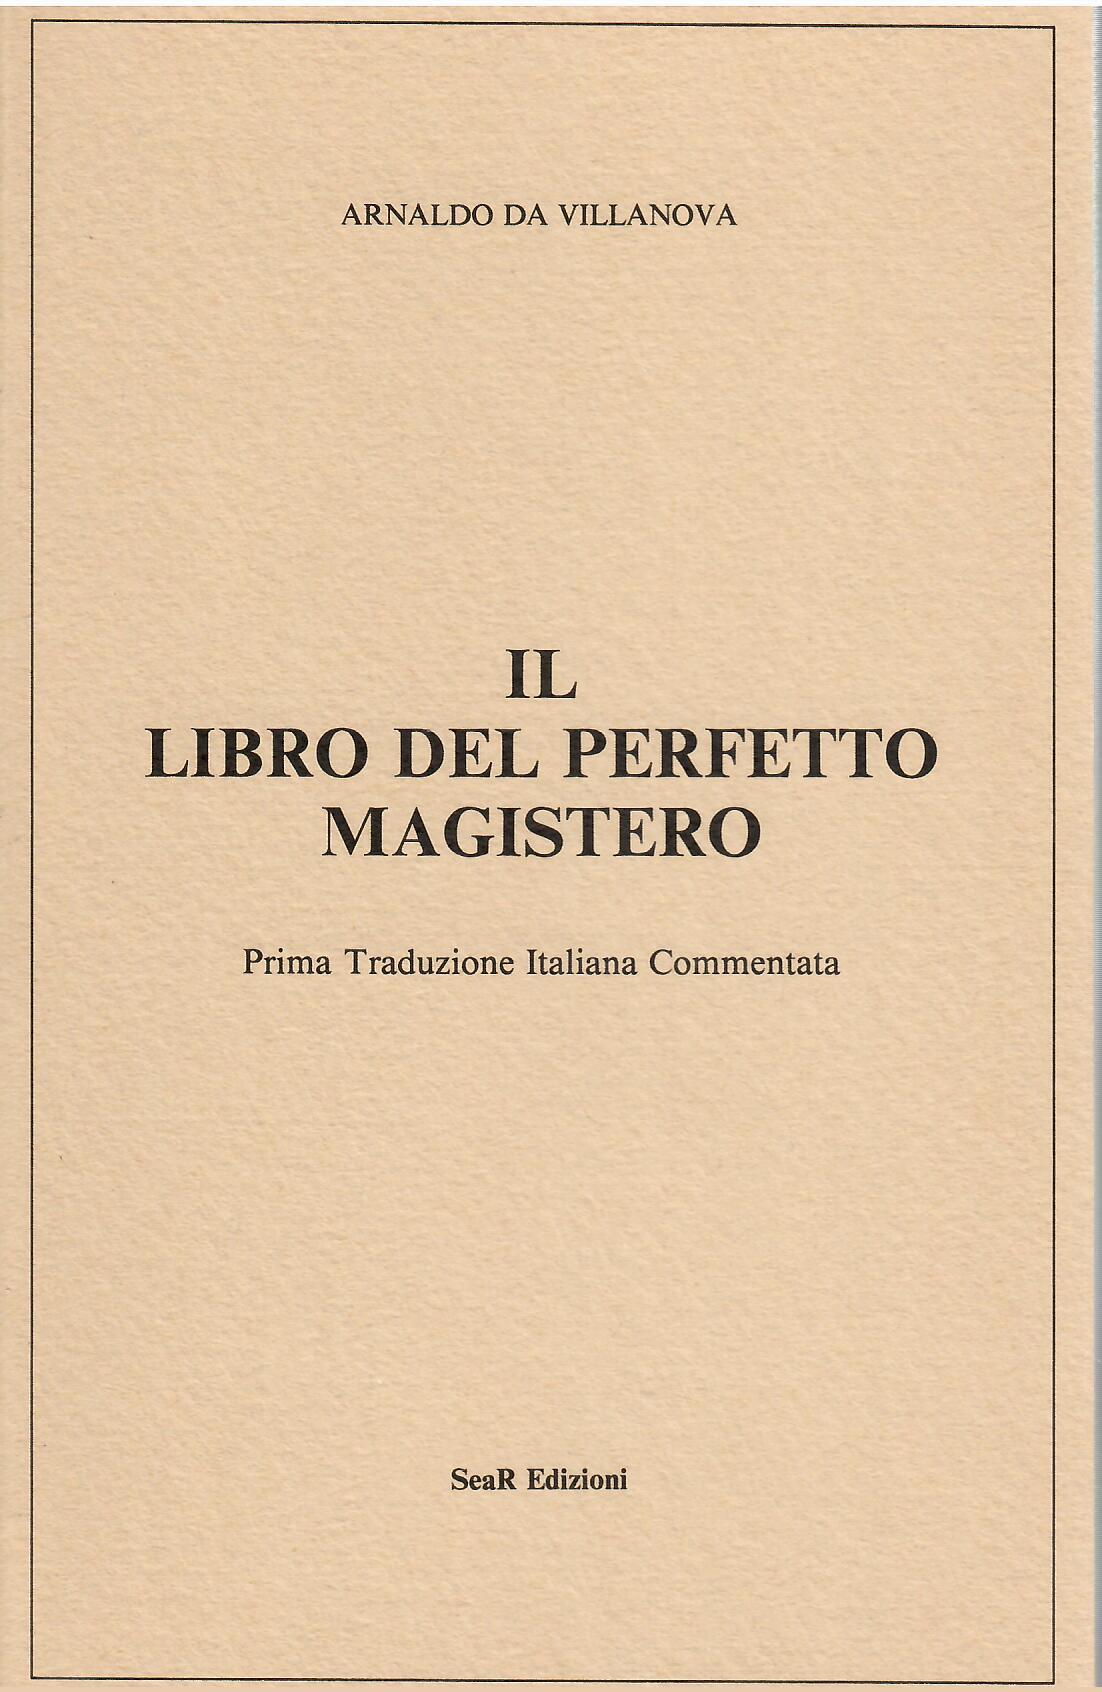 Il Libro del Perfetto Magistero - Arnaldo da Villanova